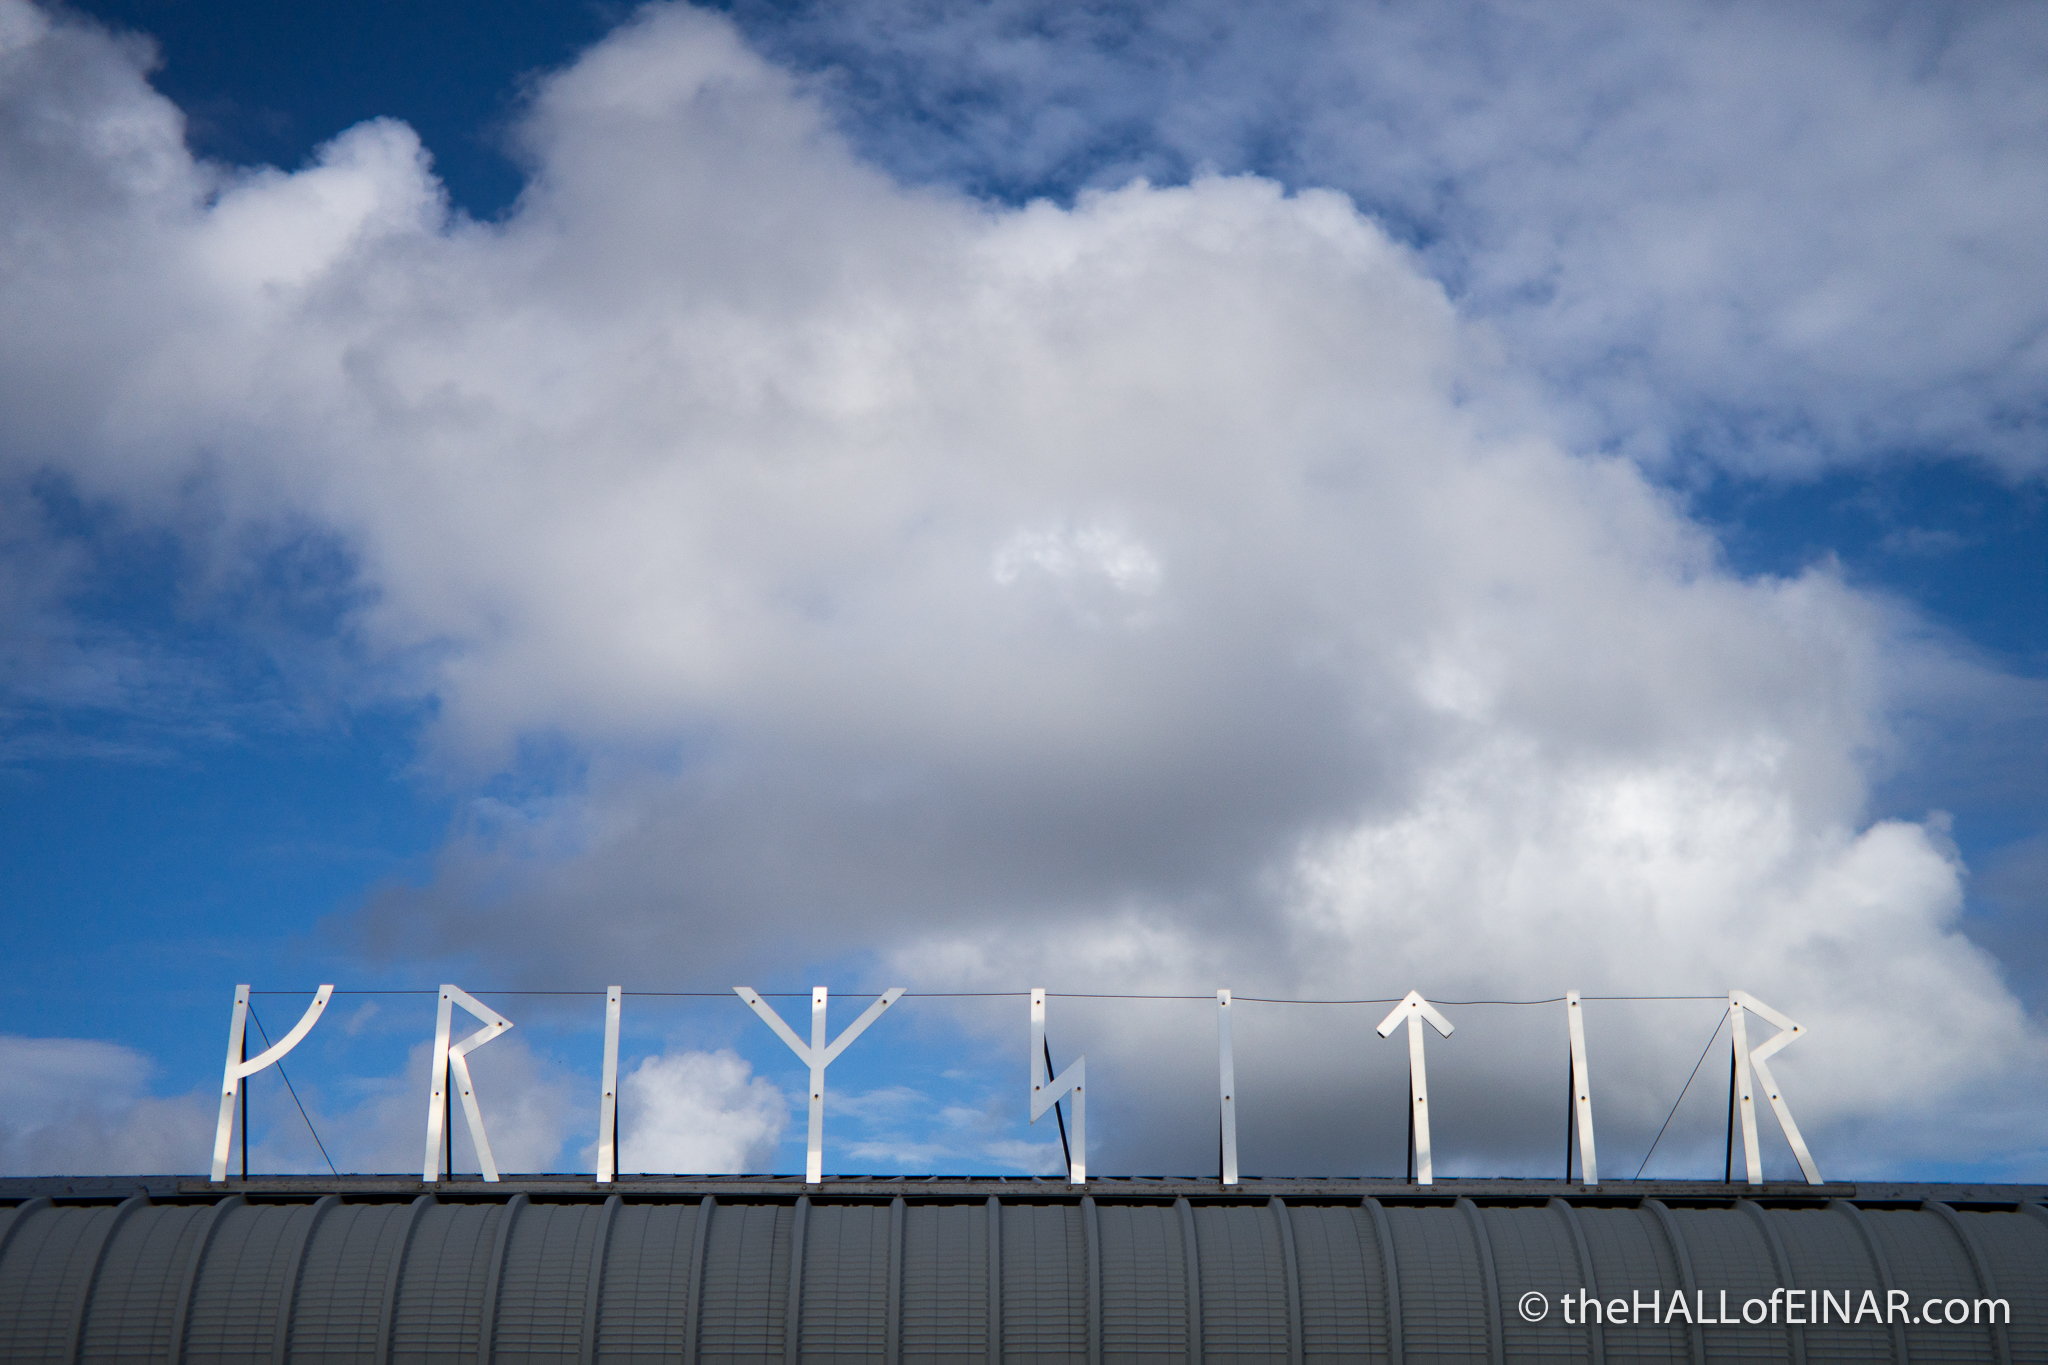 Kirkwall Airport - photograph (c) 2016 David Bailey (not the)